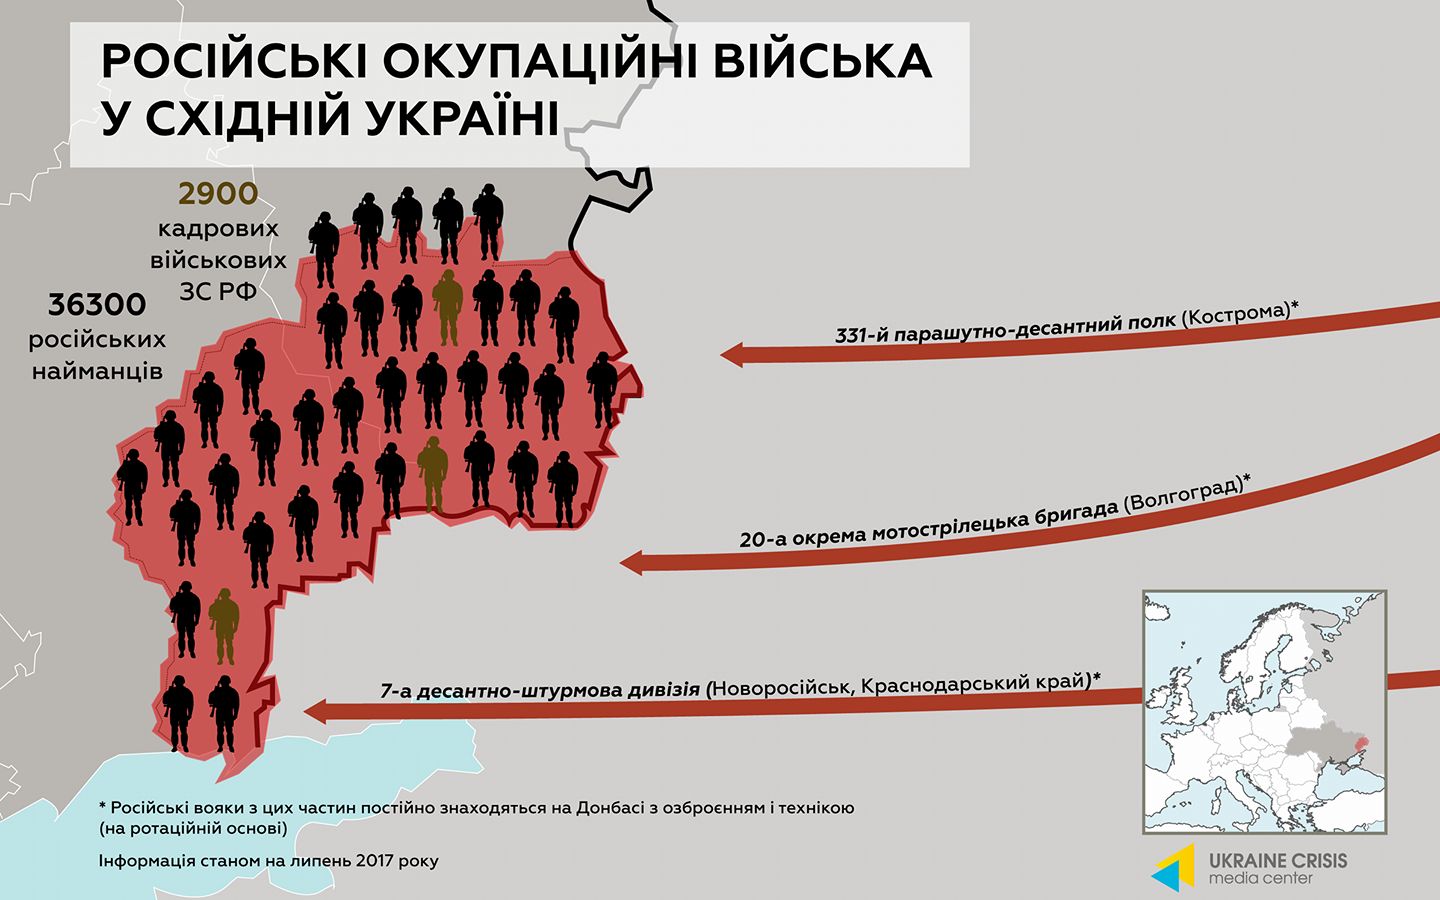 Инфографика ФБ Климпуш-Цинцадзе